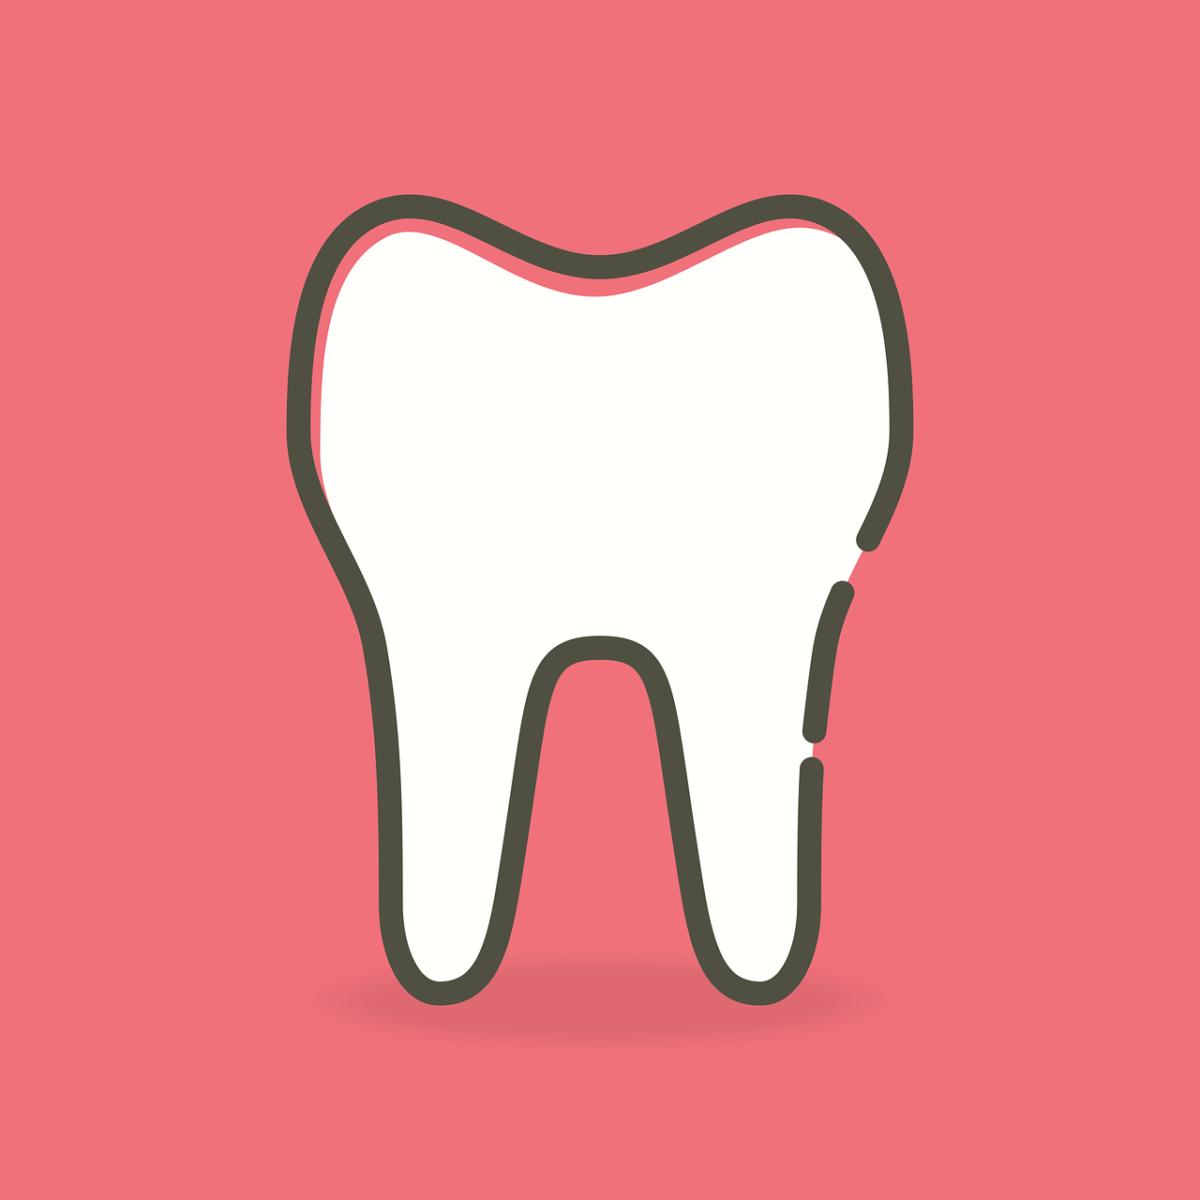 Ładne zdrowe zęby również świetny prześliczny uśmieszek to powód do zadowolenia.